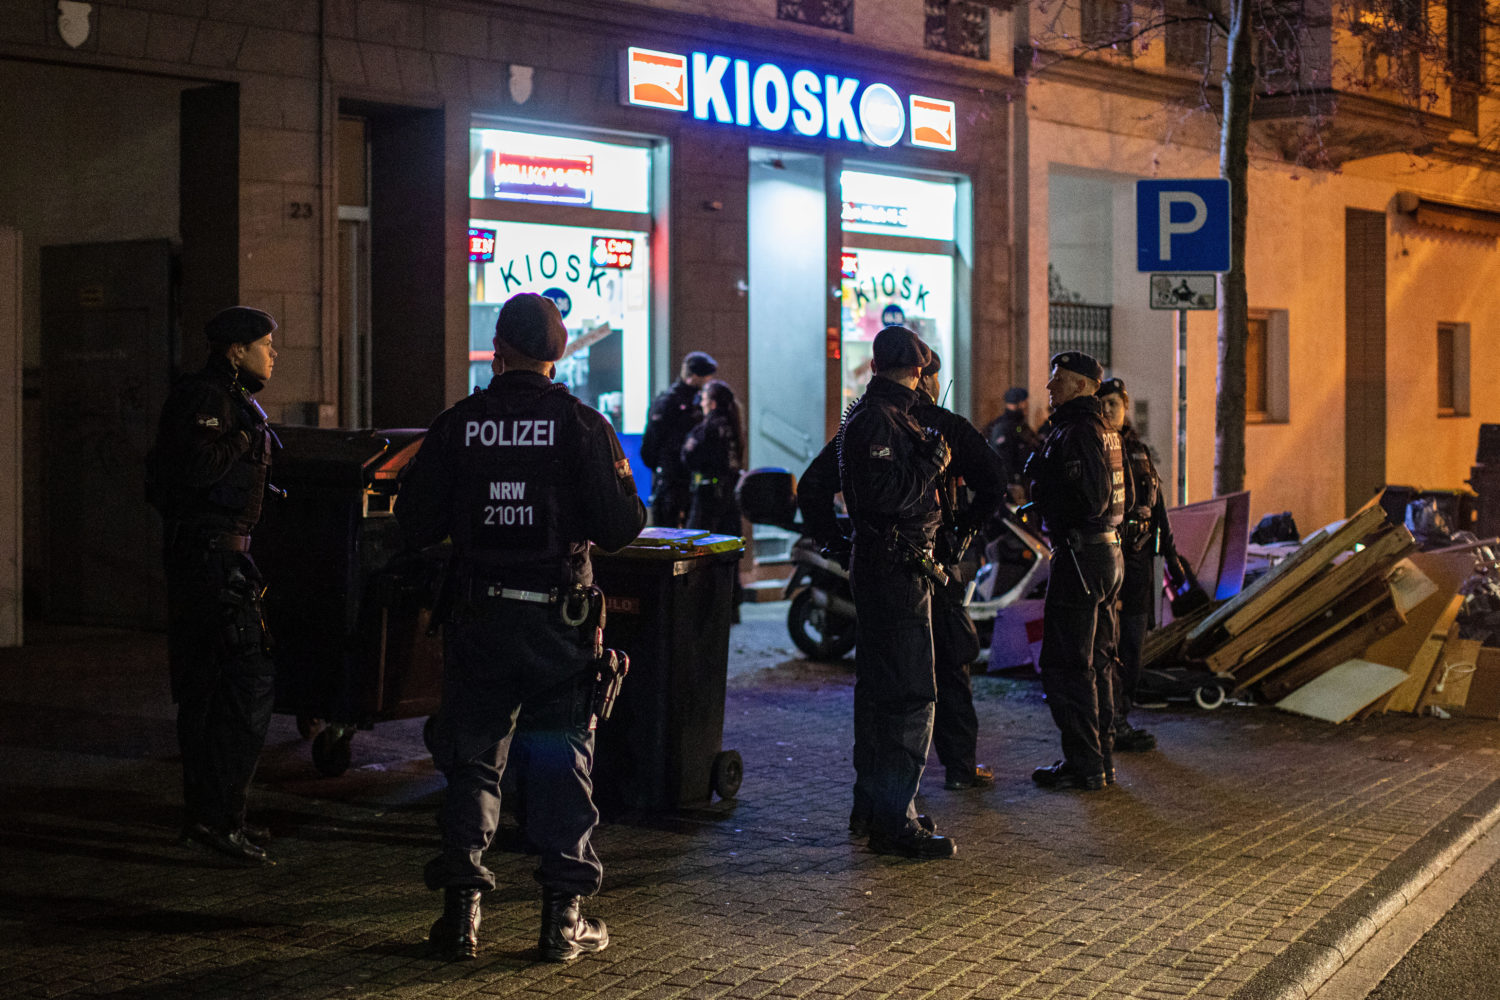 Anscheinend ein beliebtes Razzienziel: Spätis/Kioske. Auf Facebook hat die Berliner Polizei damit einen Klickhit gebracht. Foto: Imago Images/Reichwein